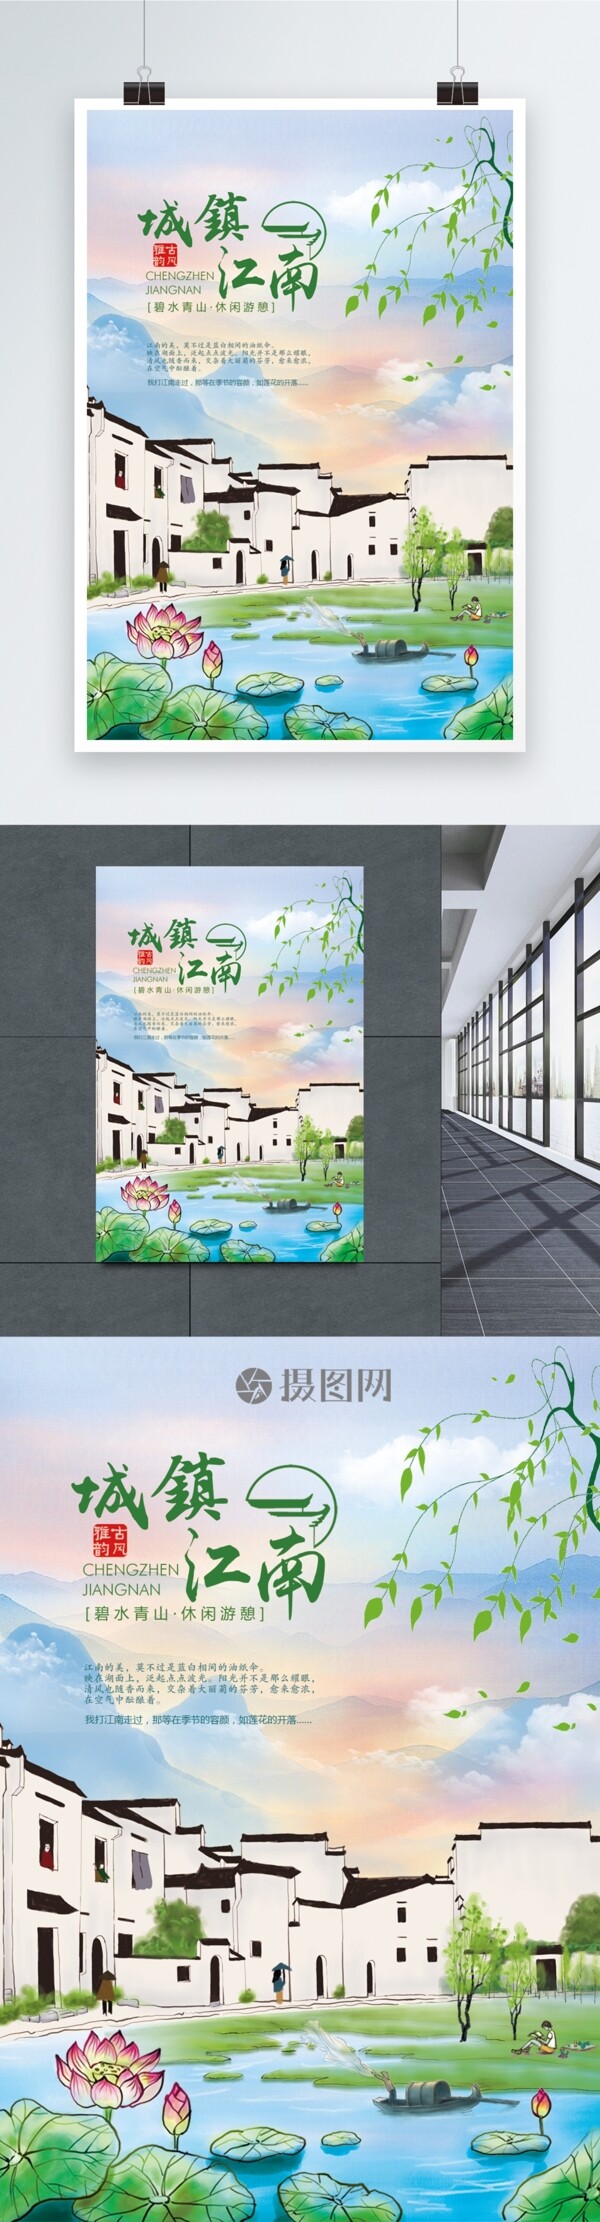 城镇江南旅游广告海报